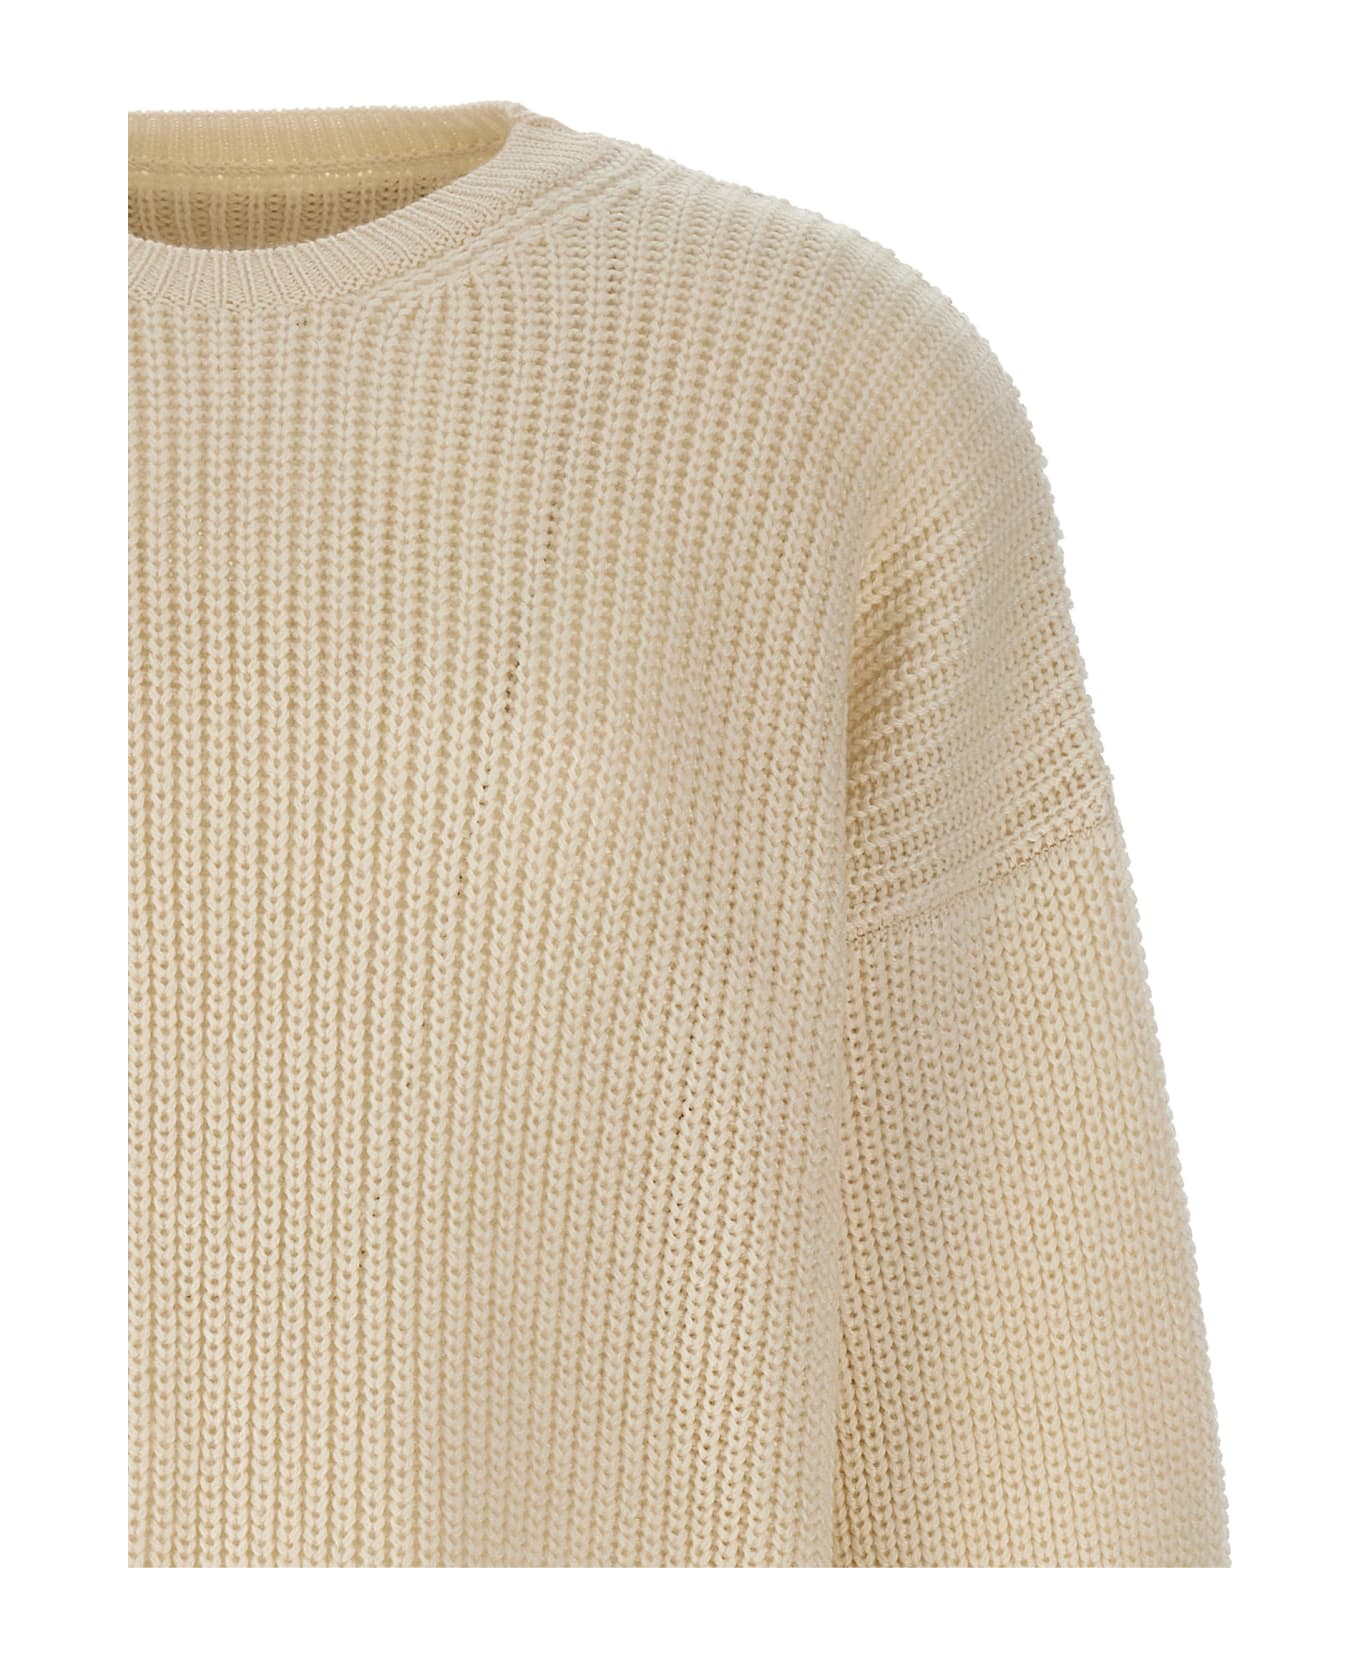 MM6 Maison Margiela Shirt Insert Sweater - 101